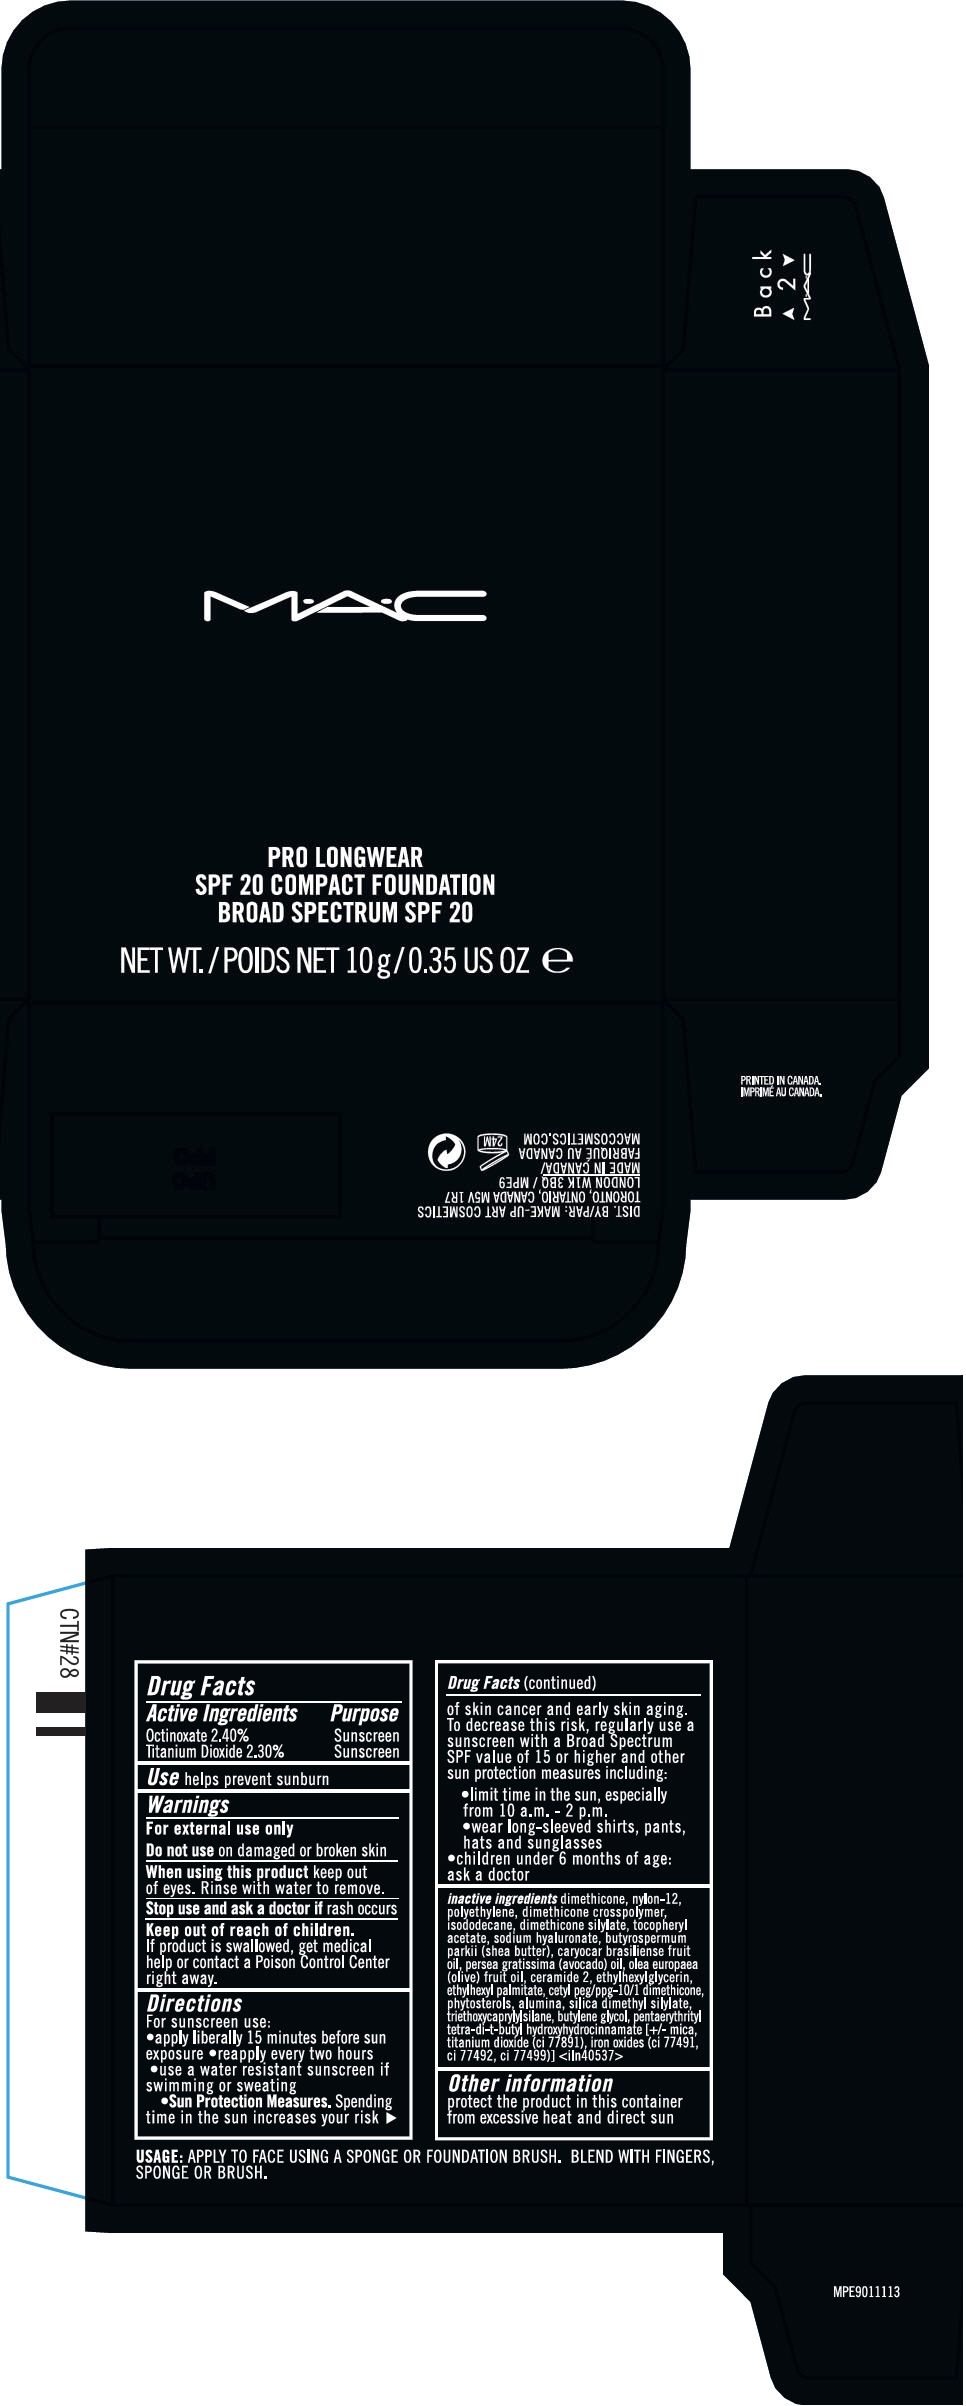 PRINCIPAL DISPLAY PANEL - 10 g Jar Carton